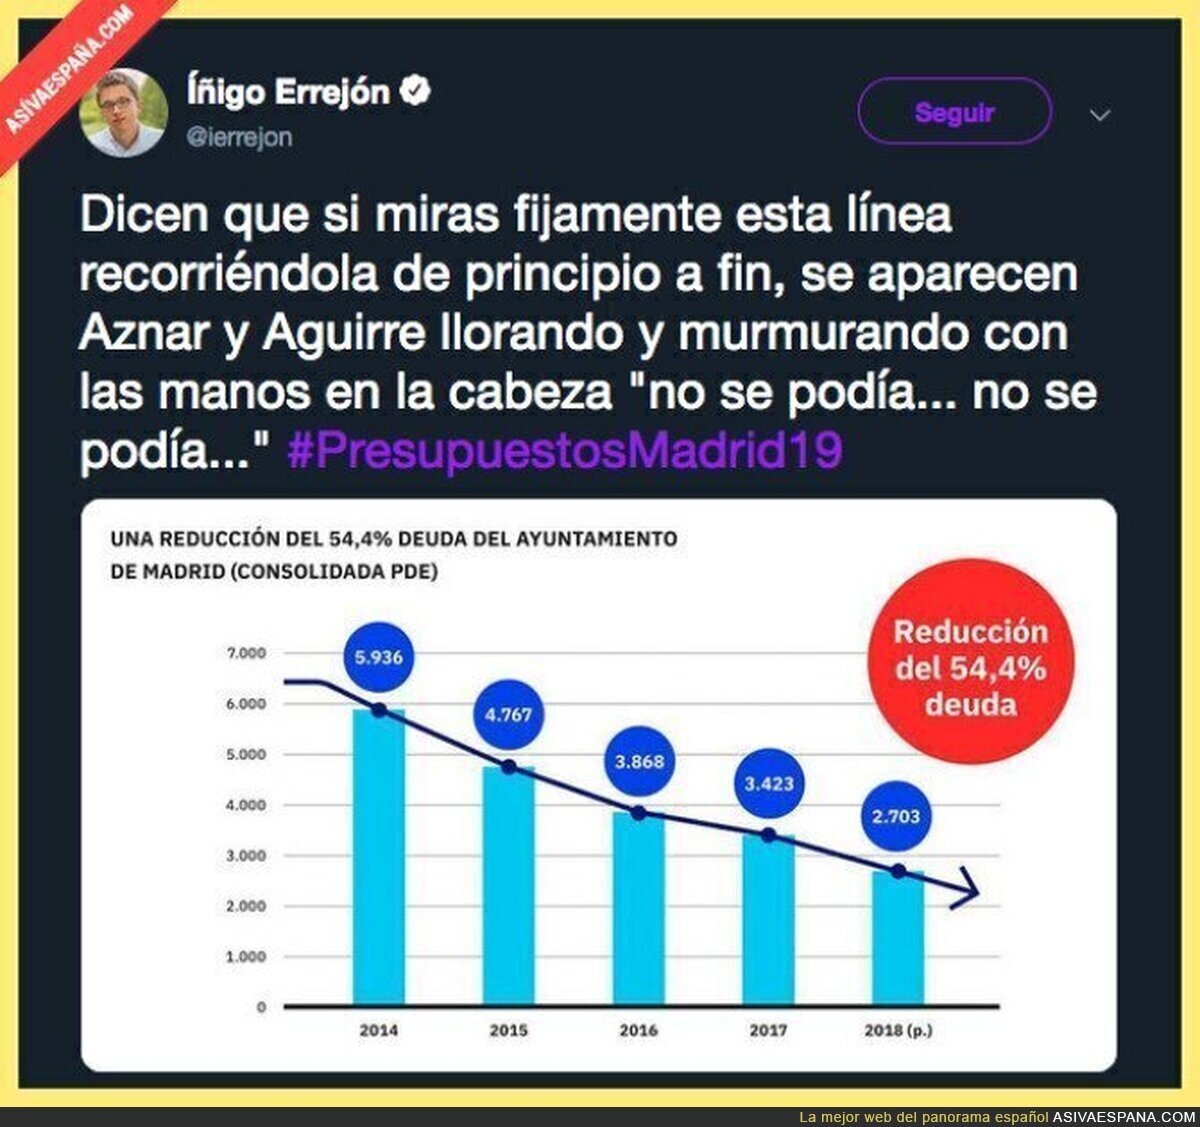 Los comunistas de Podemos al final saben como administrar el dinero público